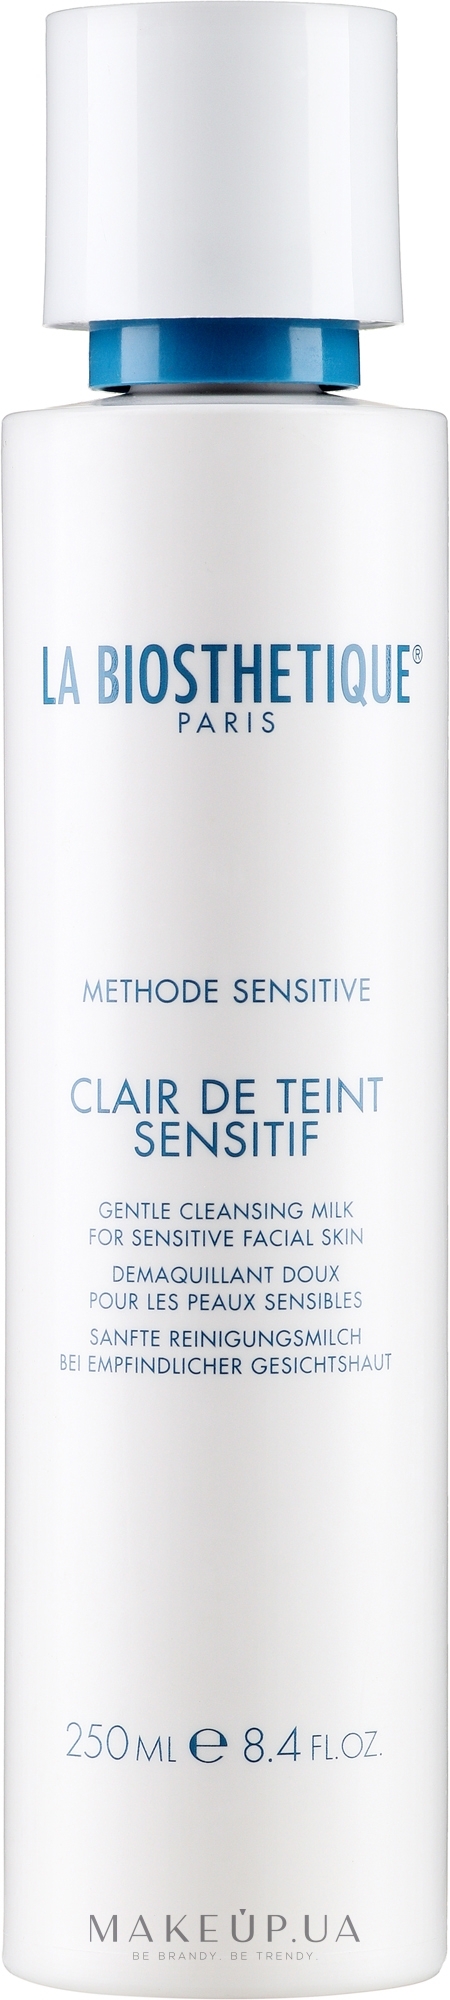 Очищающее молочко для лица - La Biosthetique Methode Sensitive Clair de Teint Sensitif Gentle Cleansing Milk — фото 250ml